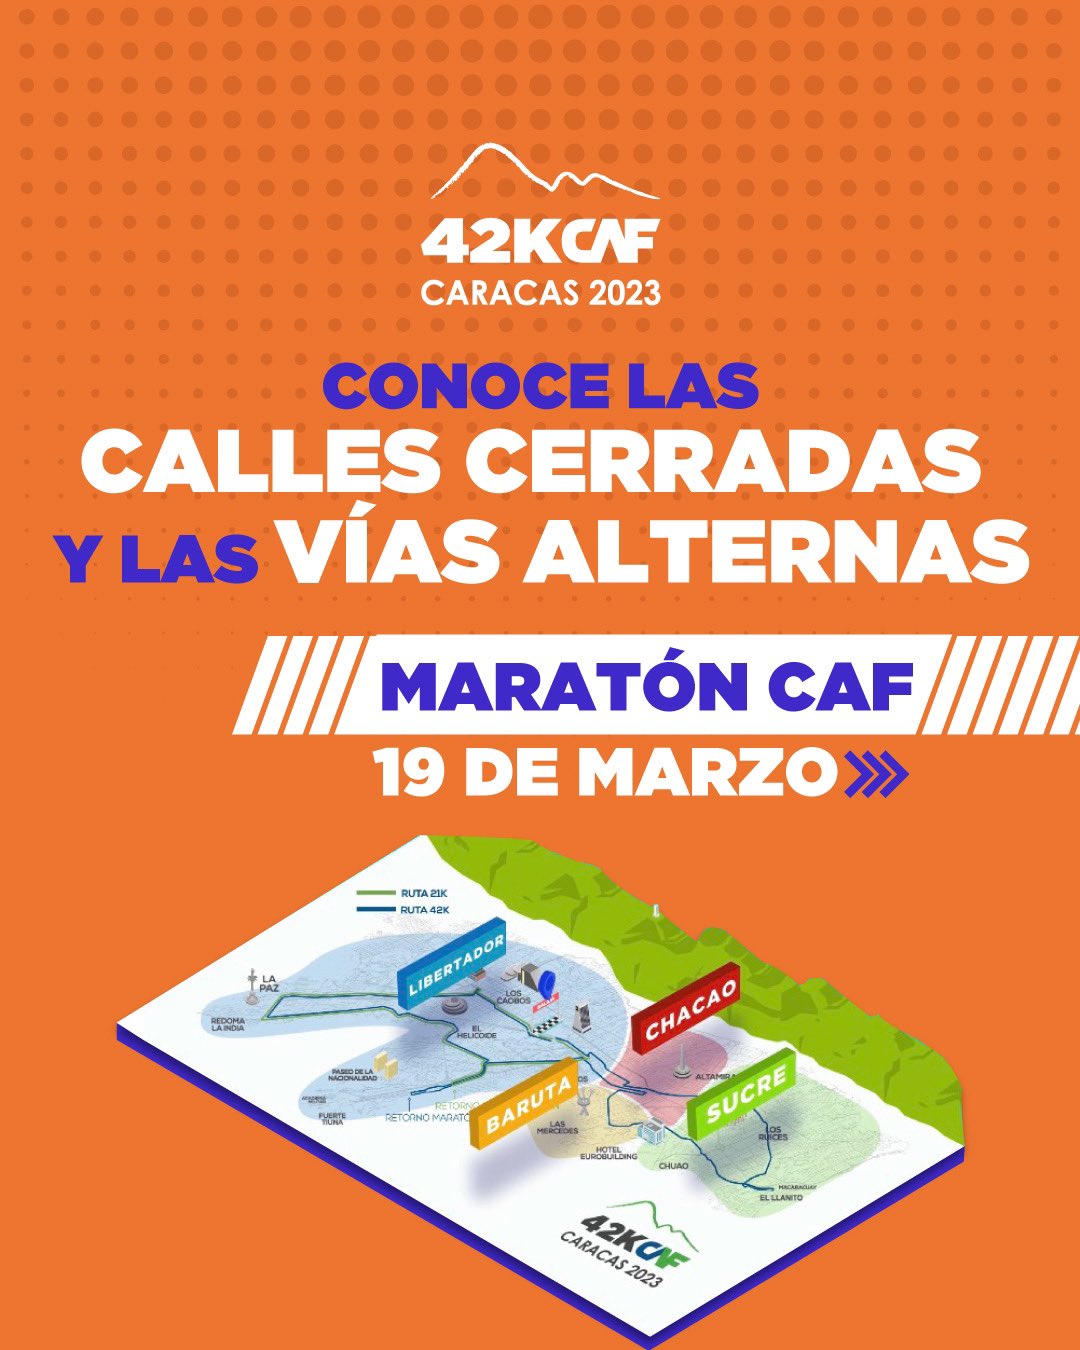 Conoce las vías que estarán cerradas por el maratón CAF en Caracas 